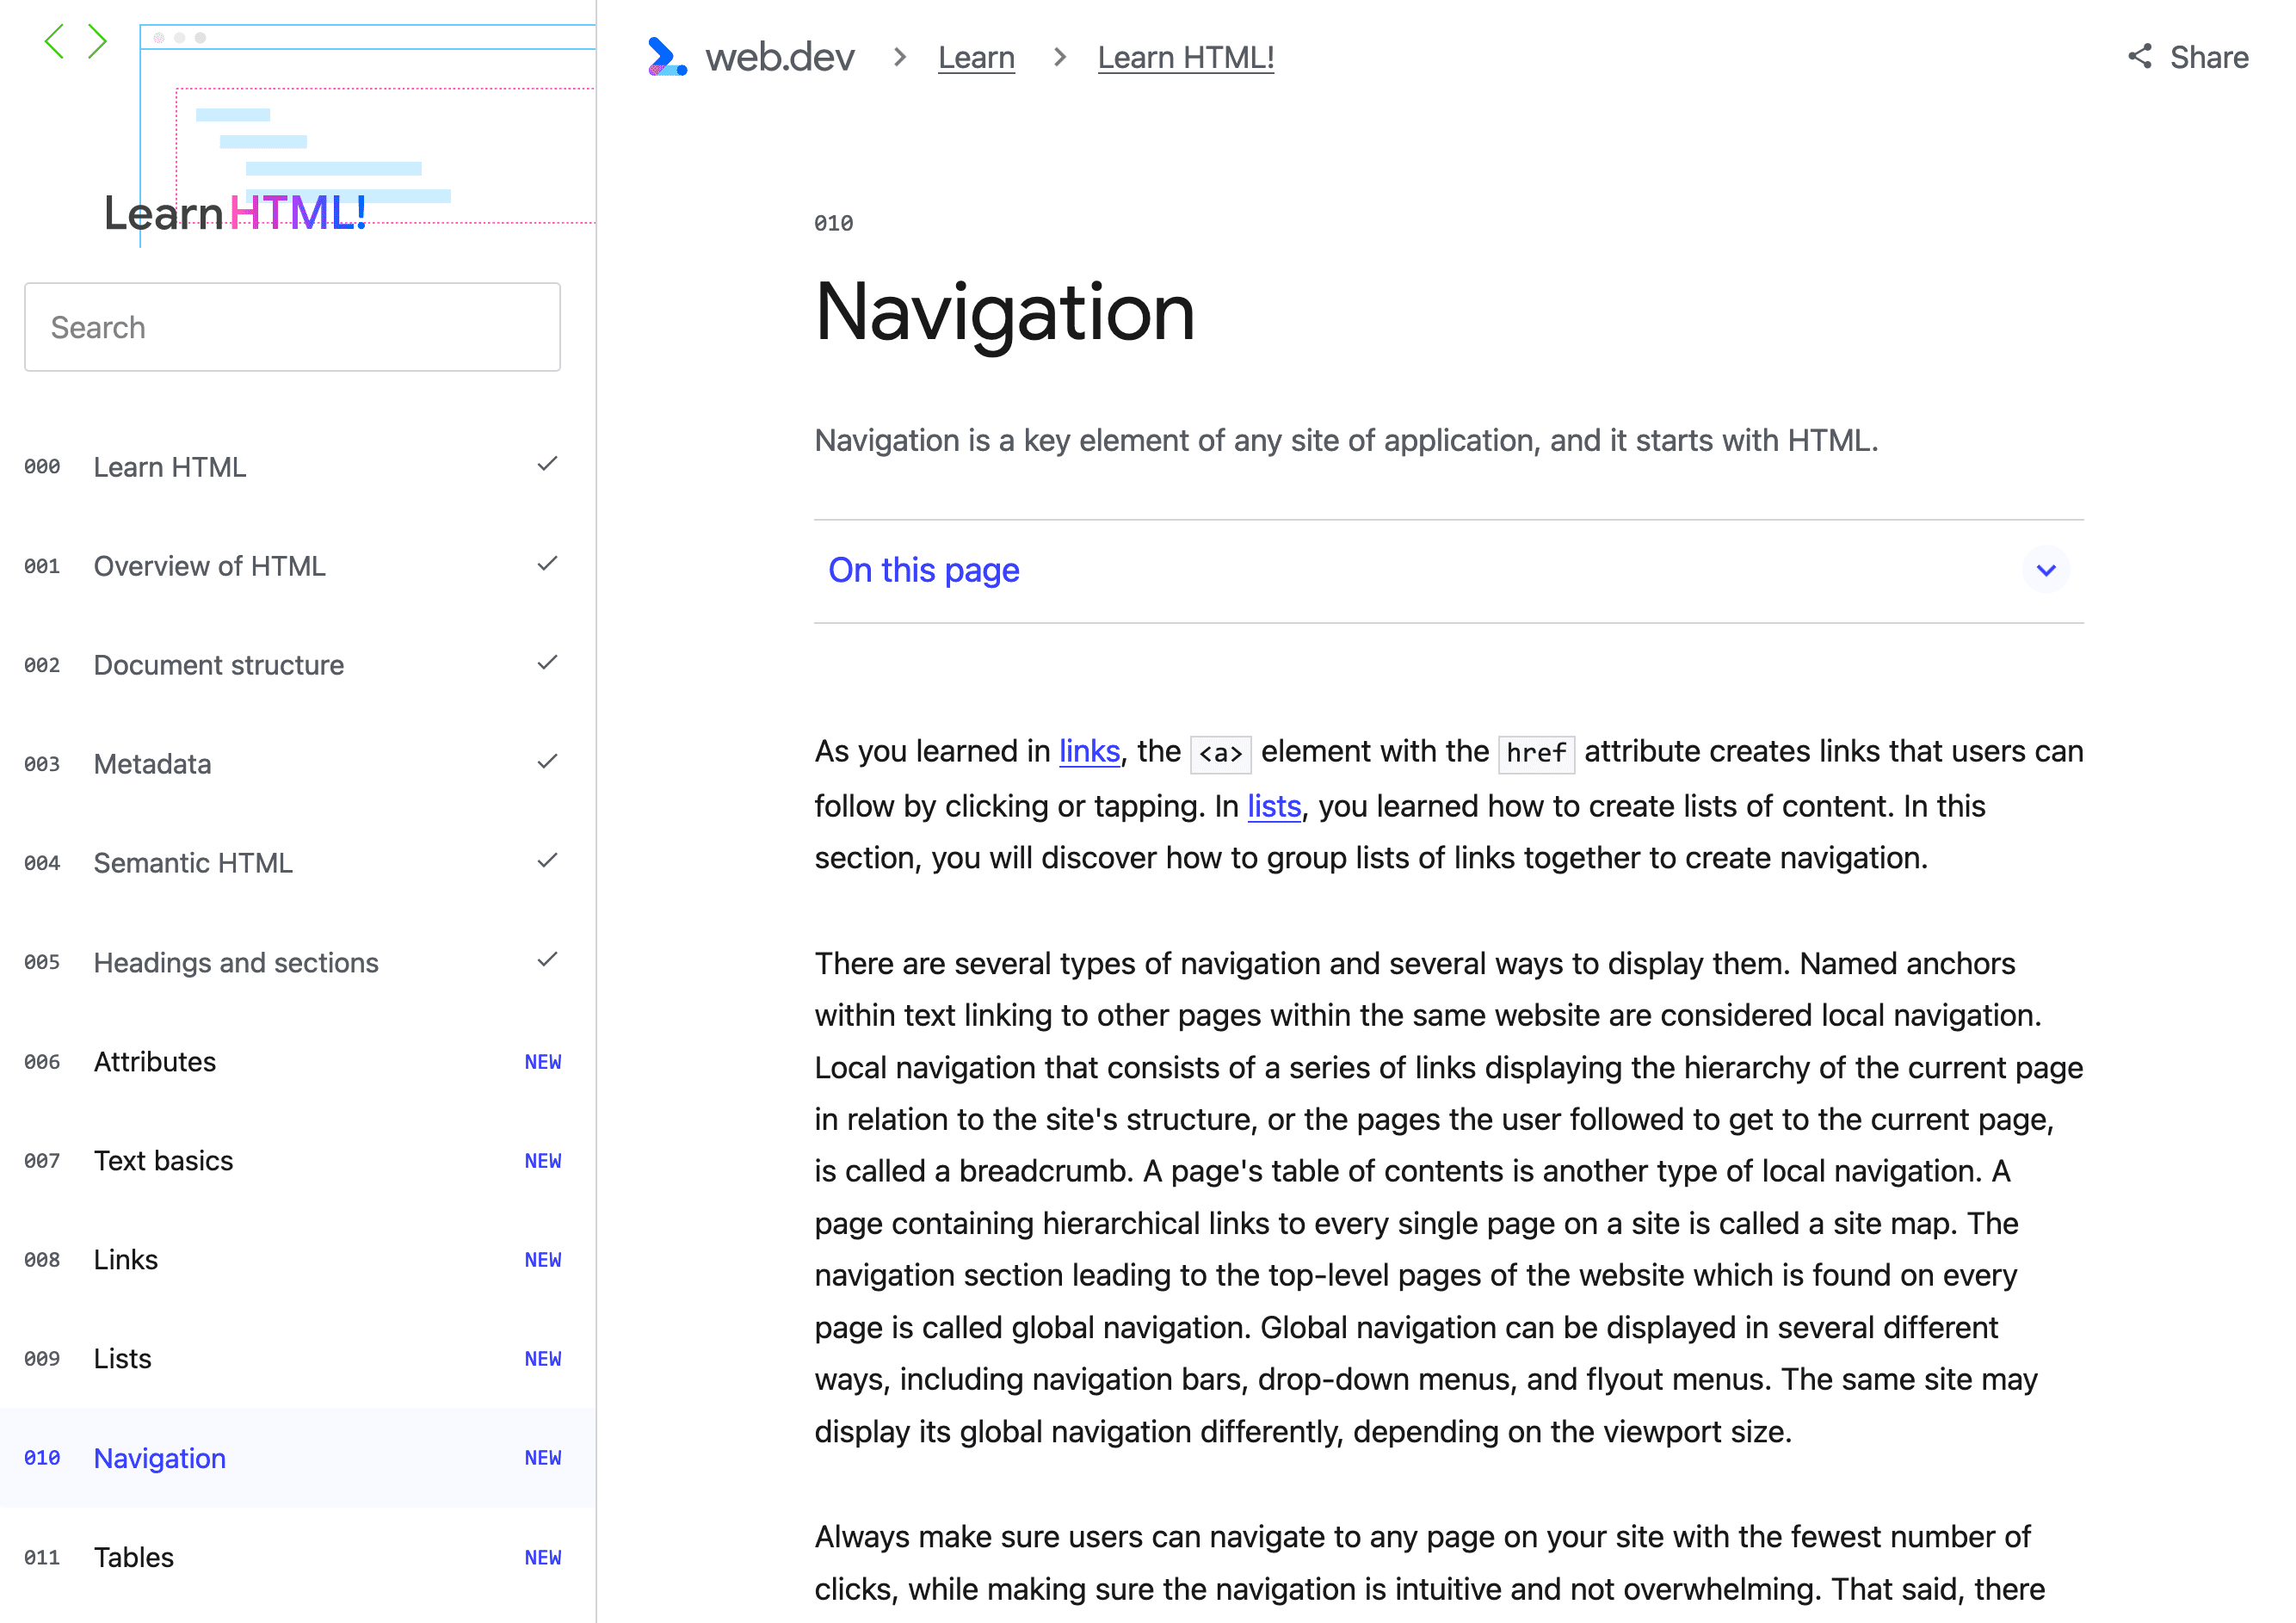 Die Titelseite dieser Seite, einschließlich der Navigationspfade oben, einer Schaltfläche zum Anzeigen des Inhaltsverzeichnisses für diese Seite und der lokalen Navigationen für die Serie.